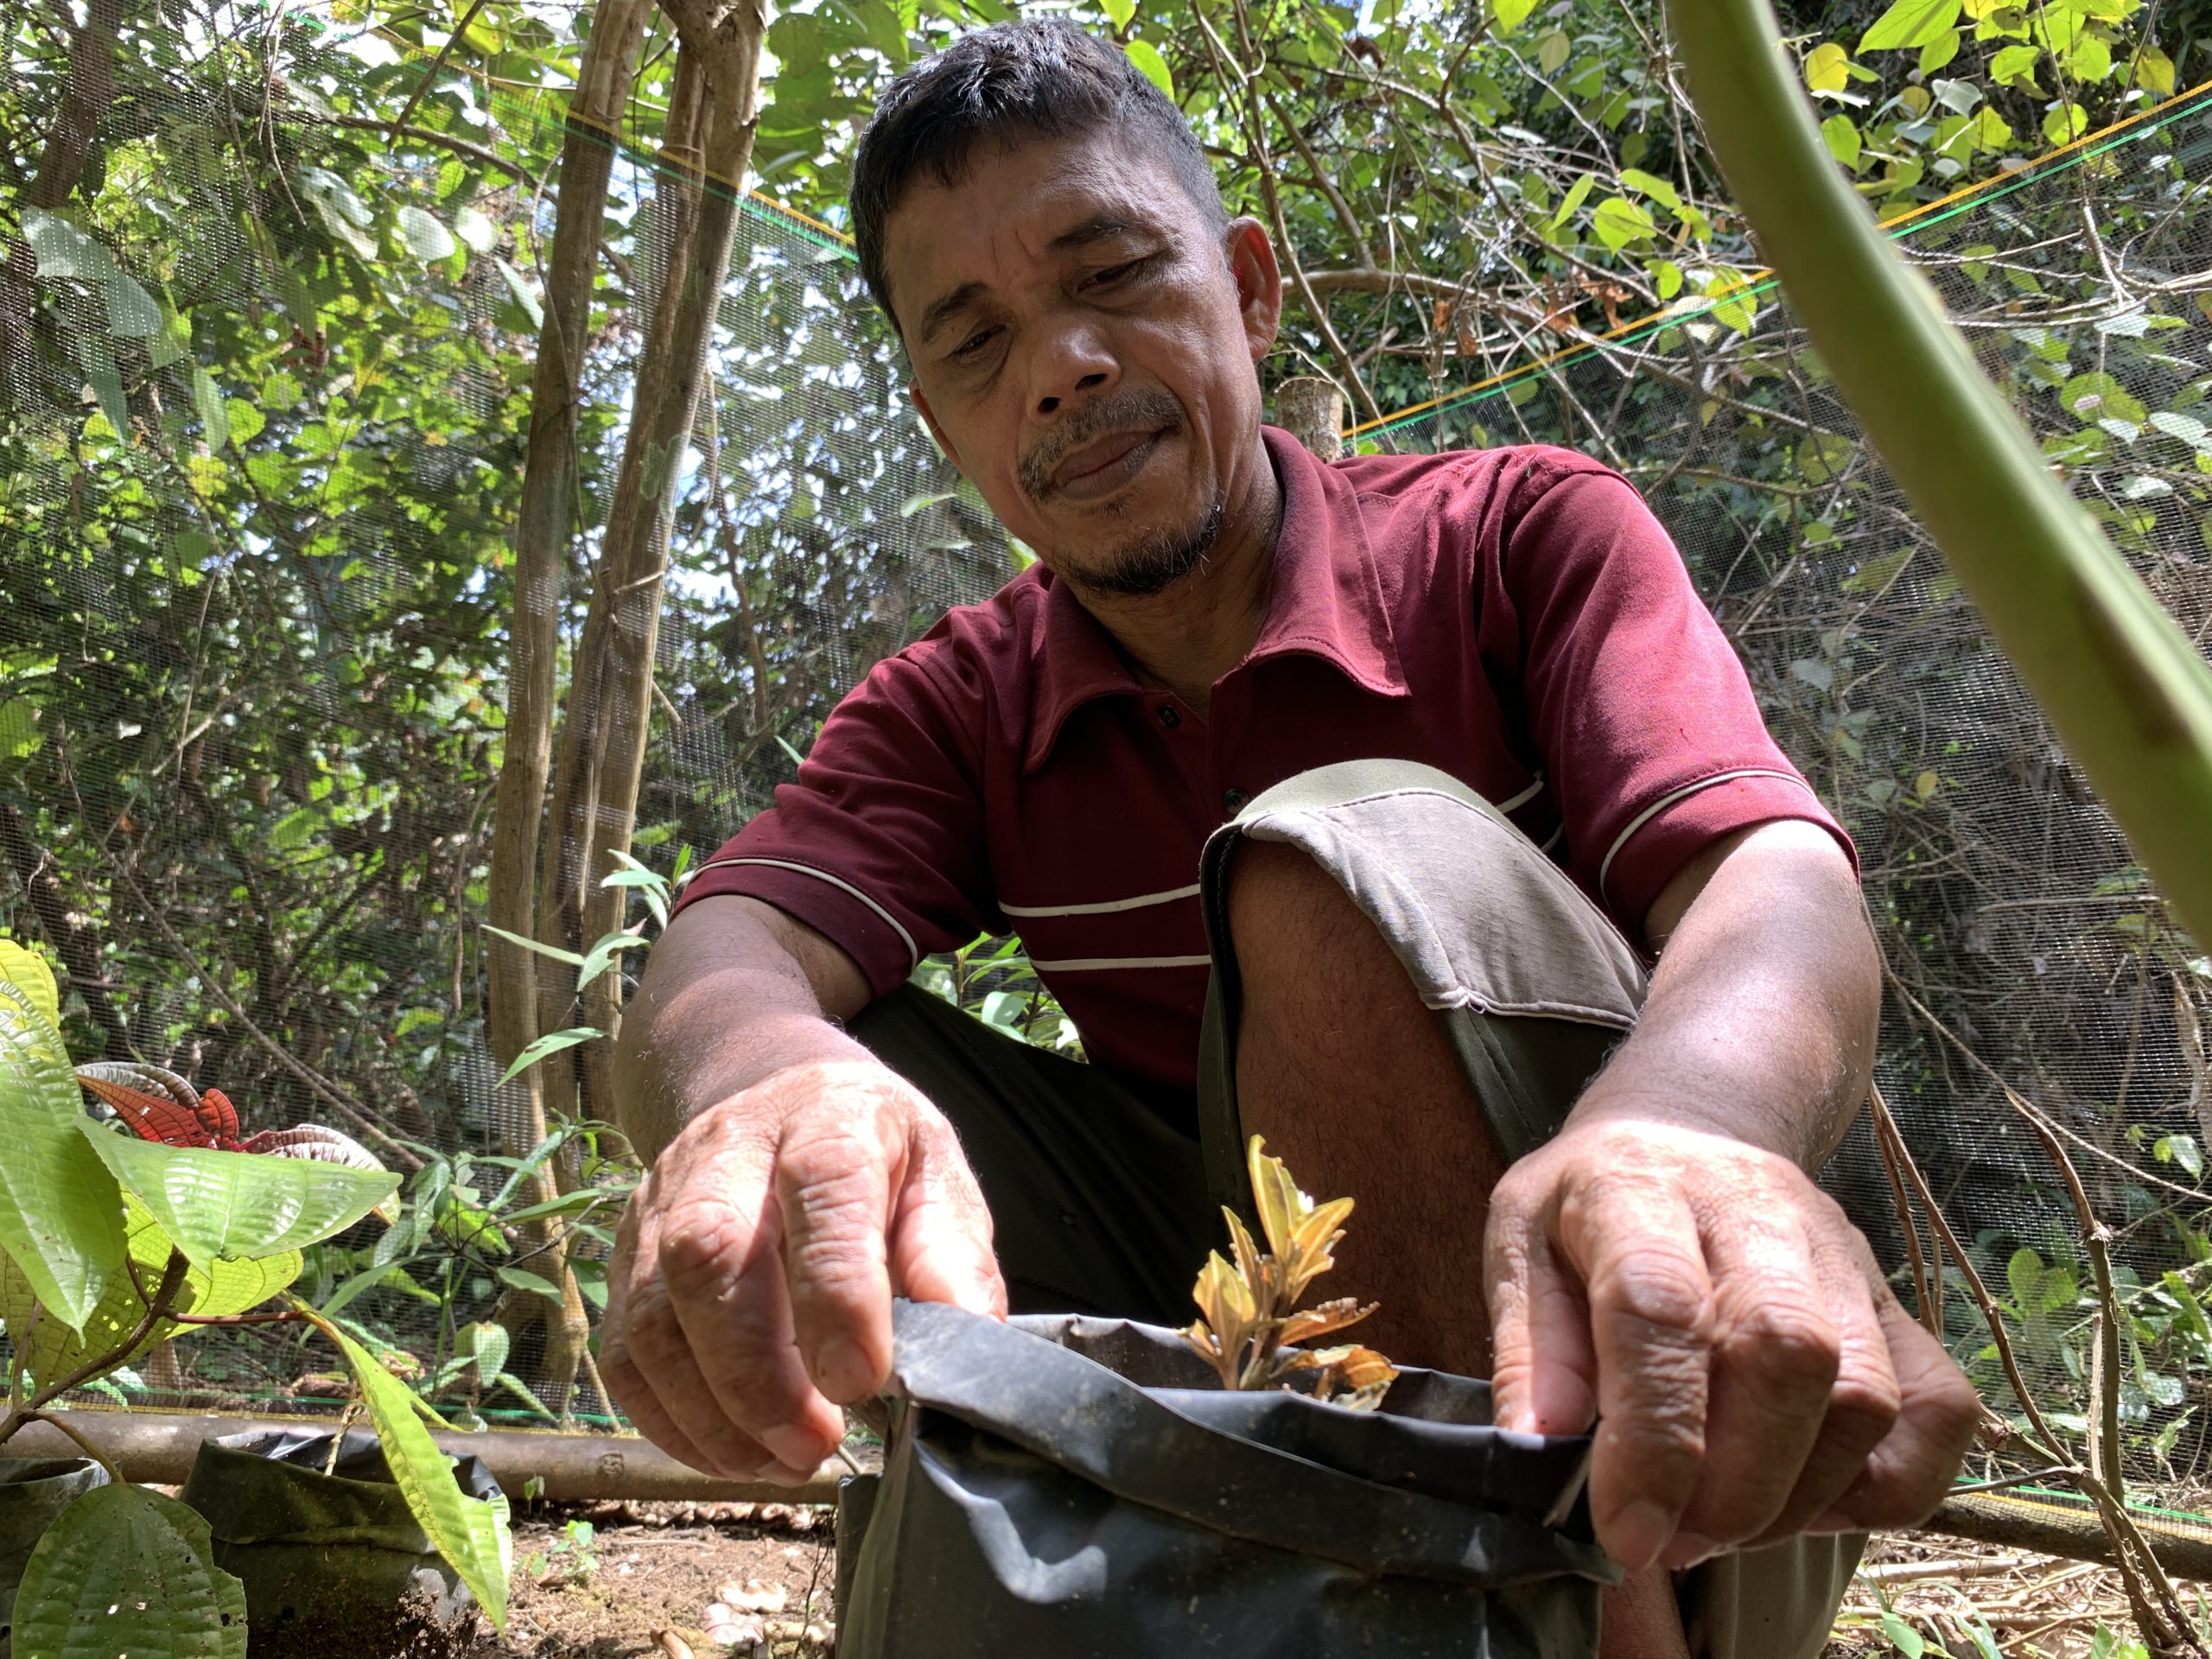  Tumenggung Nggrip menunjukkan tanaman obat yang mulai langka di hutan. Ia mengumpulkan tanaman obat untuk ditanam di taman obat. Foto: Yitno Suprapto/ Mongabay Indonesia